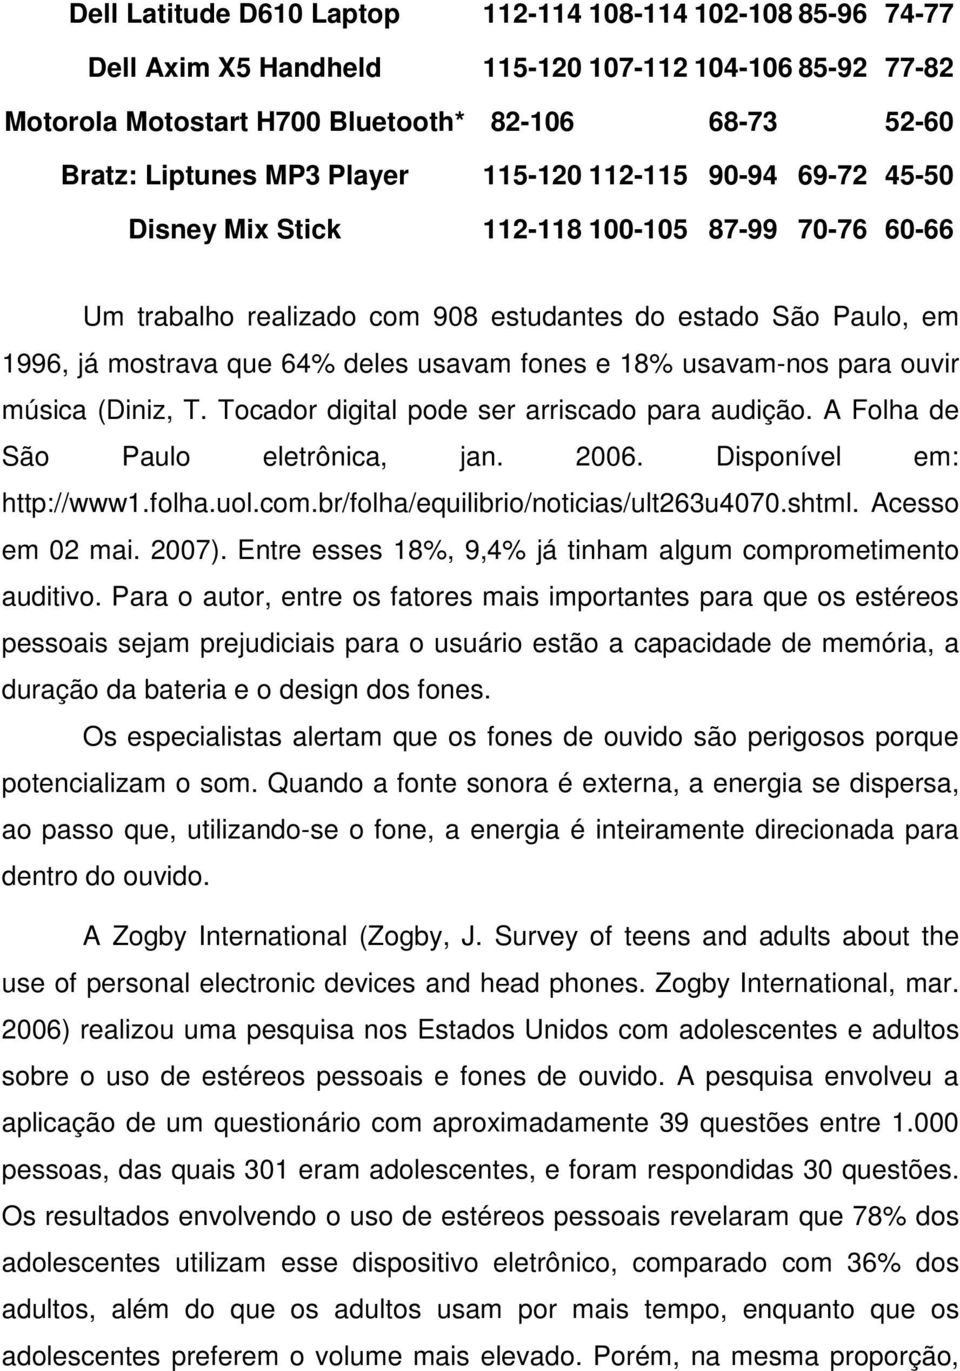 fones e 18% usavam-nos para ouvir música (Diniz, T. Tocador digital pode ser arriscado para audição. A Folha de São Paulo eletrônica, jan. 2006. Disponível em: http://www1.folha.uol.com.